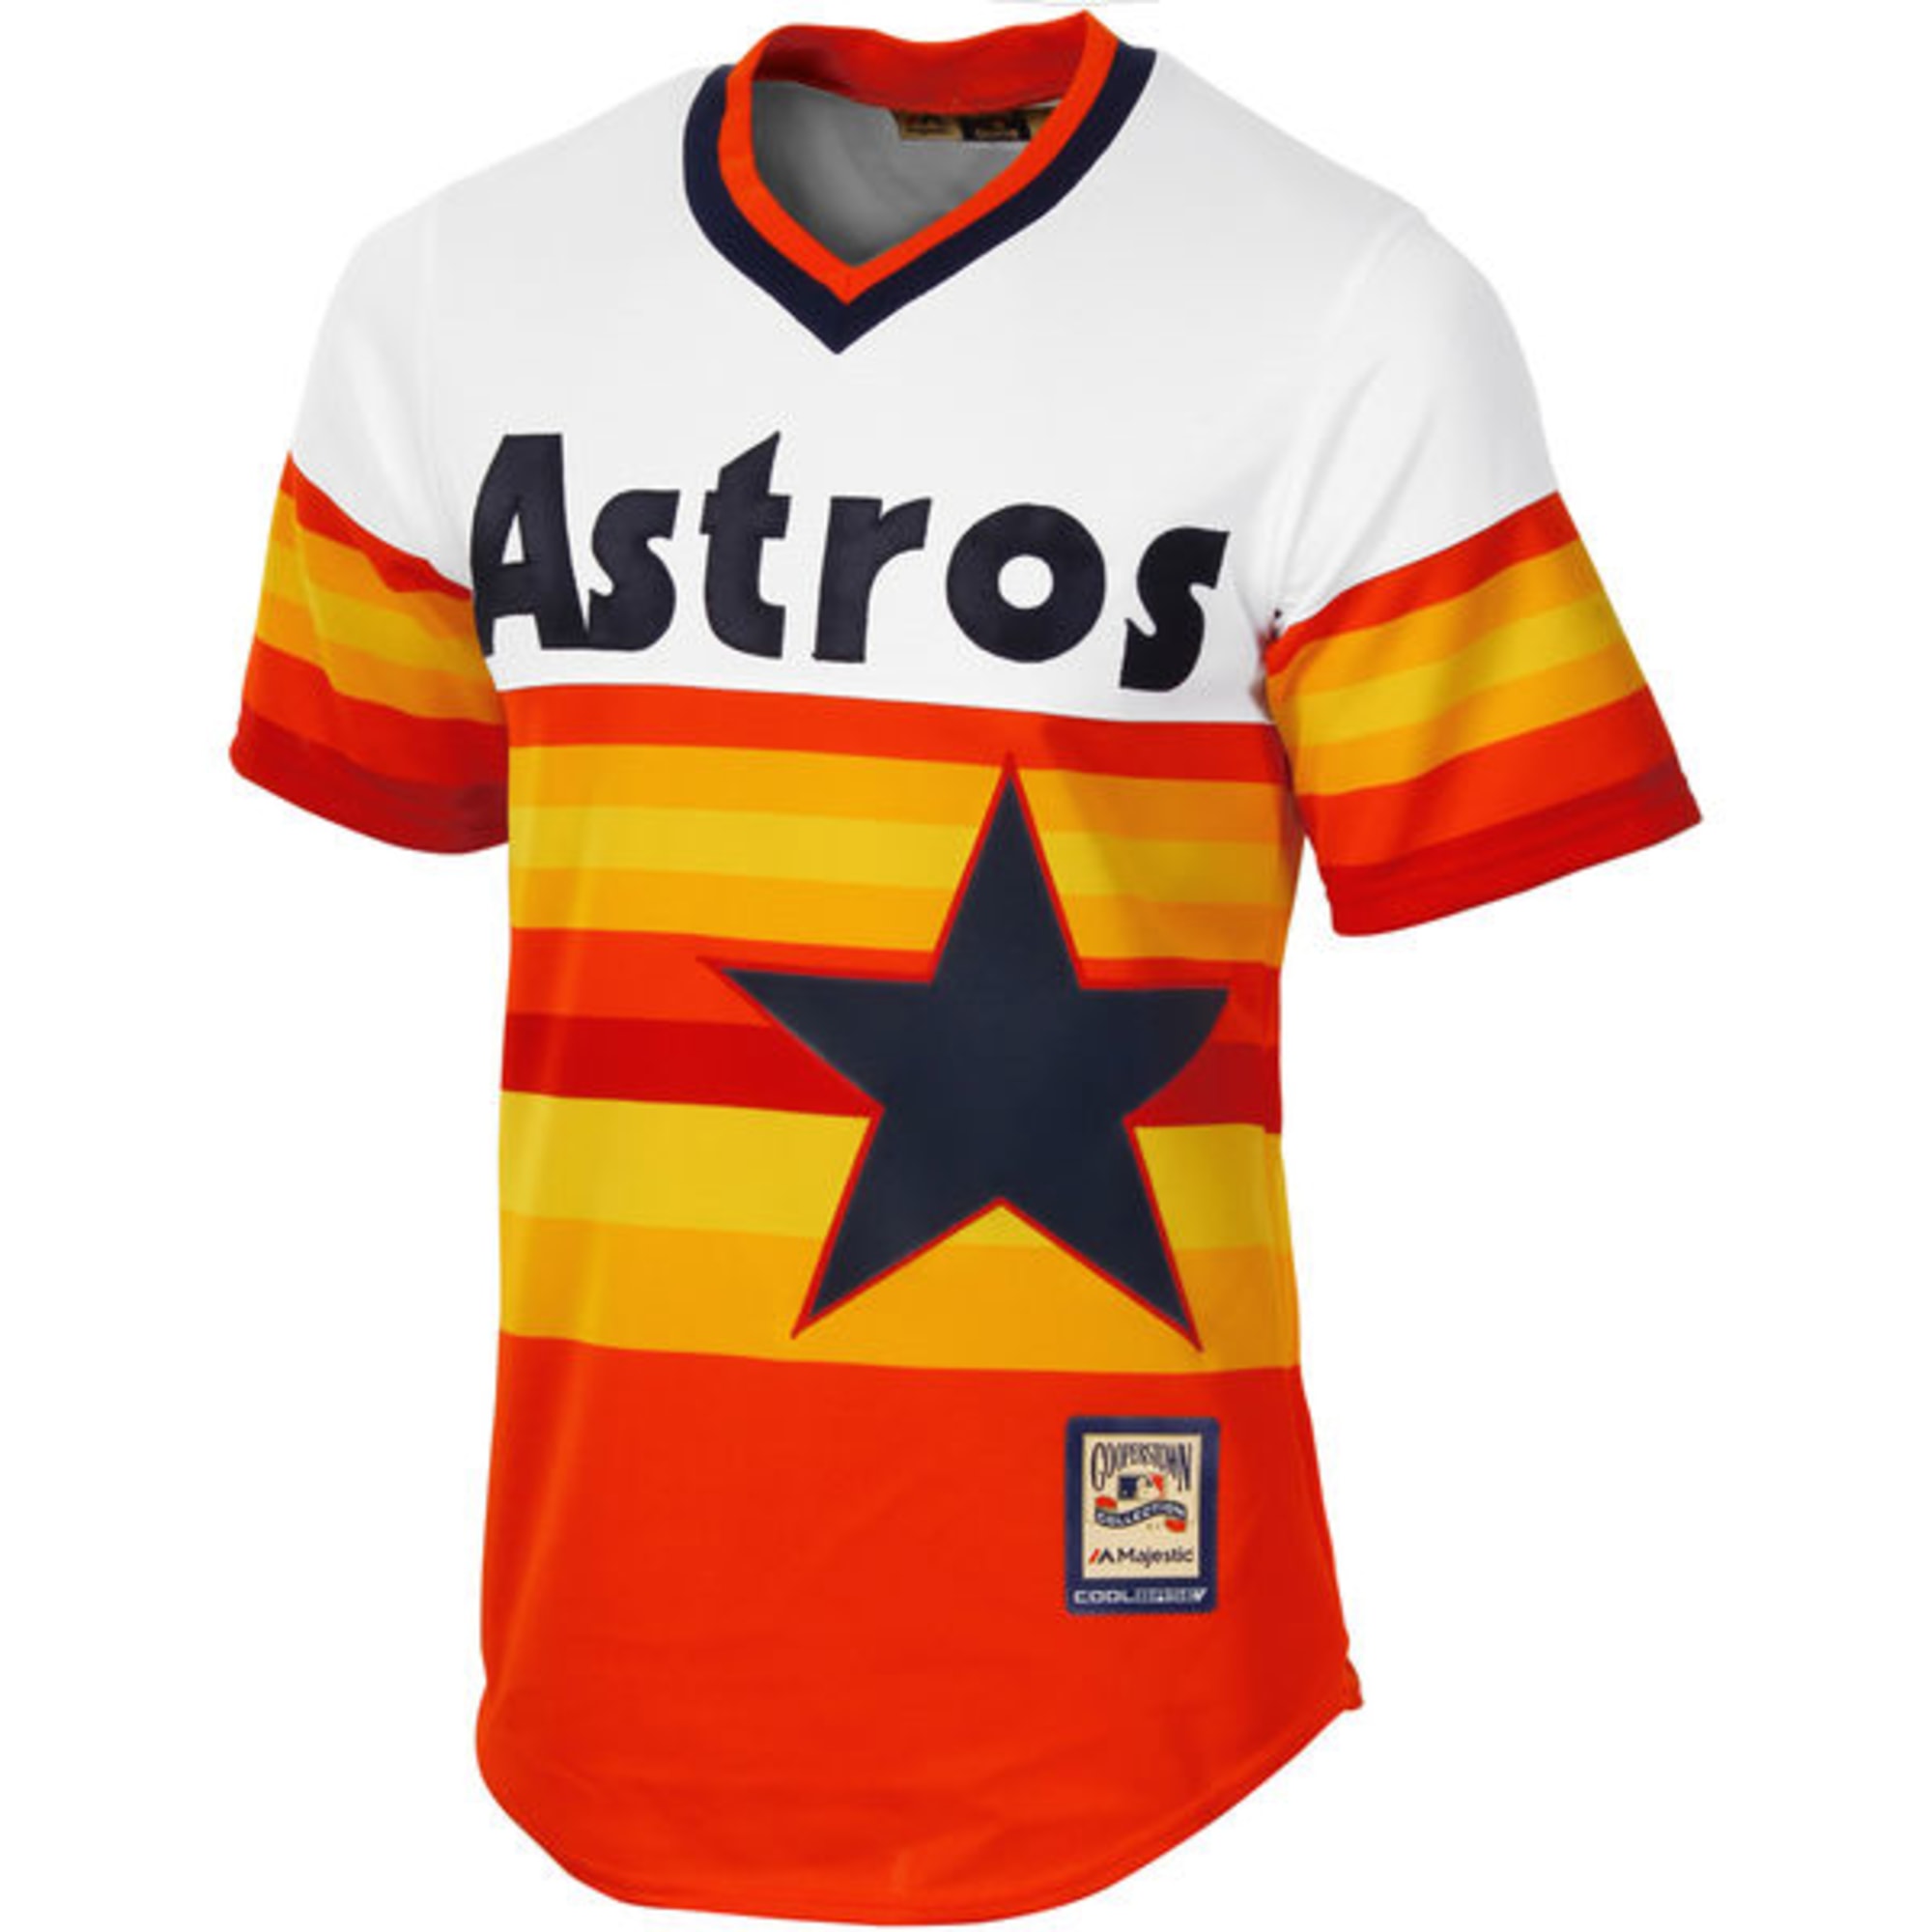 astros jersey shirt